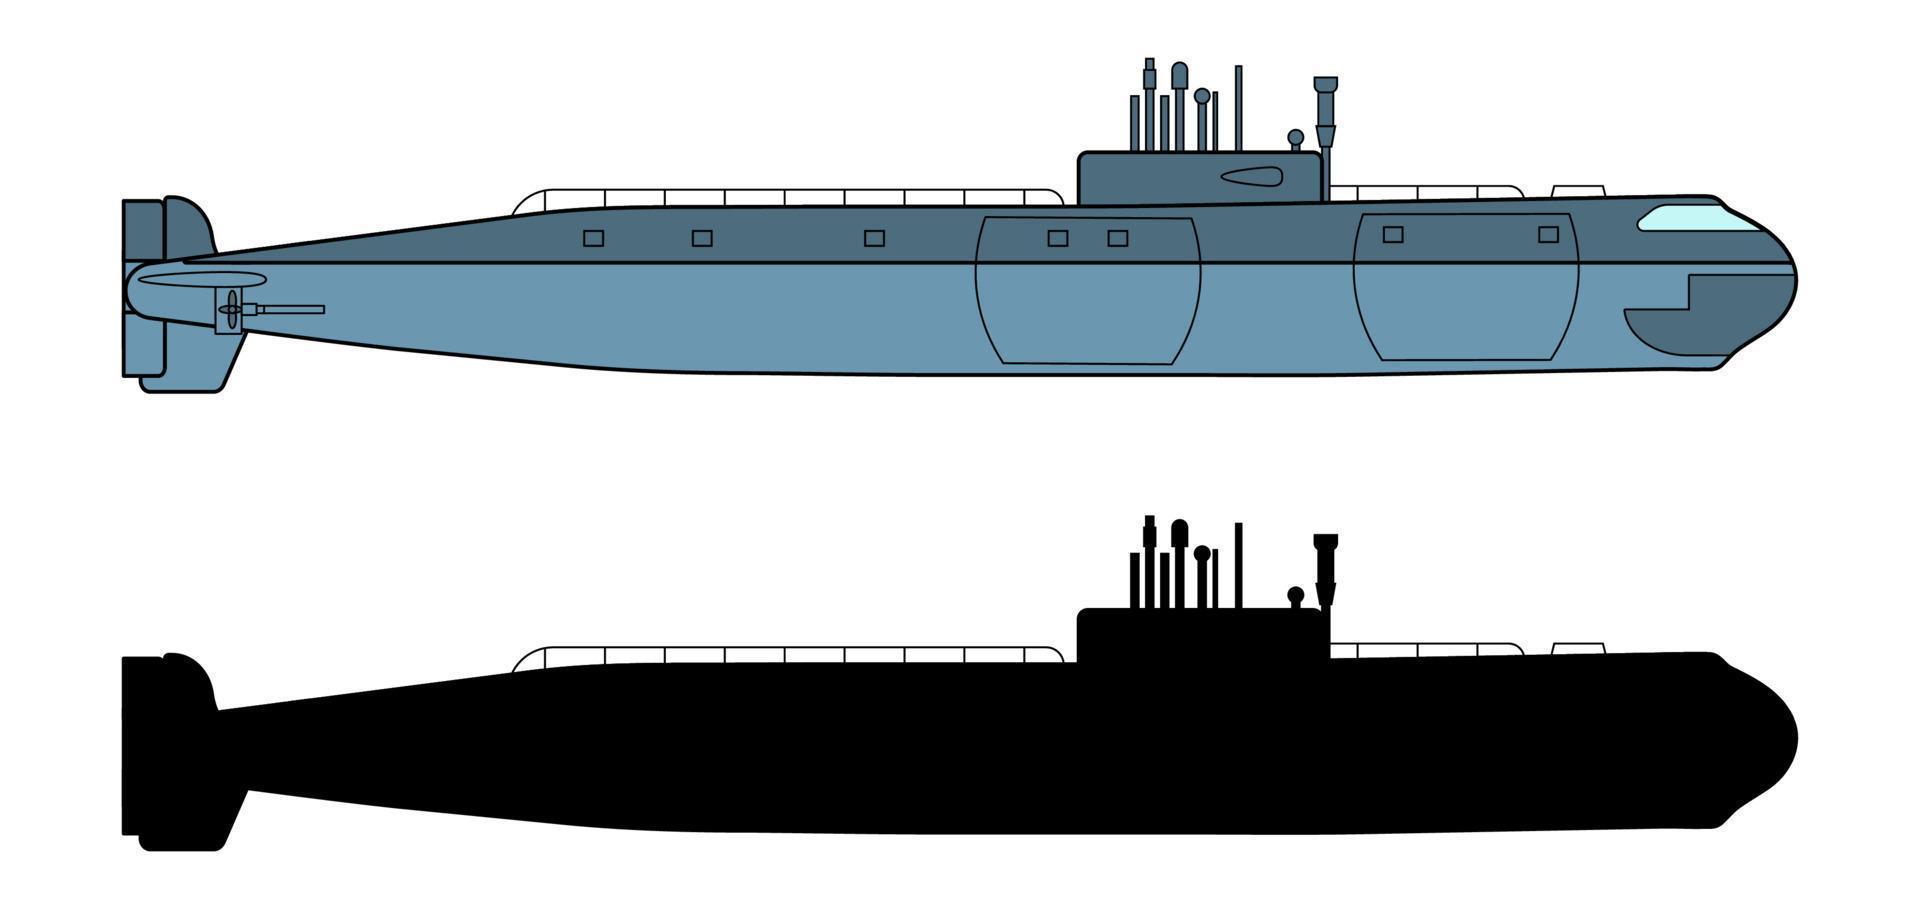 detaljerad ubåt. sidovy. krigsskepp i platt stil. militärfartyg. slagskeppsmodell. industriell ritning. vektor illustration isolerad på vit bakgrund.